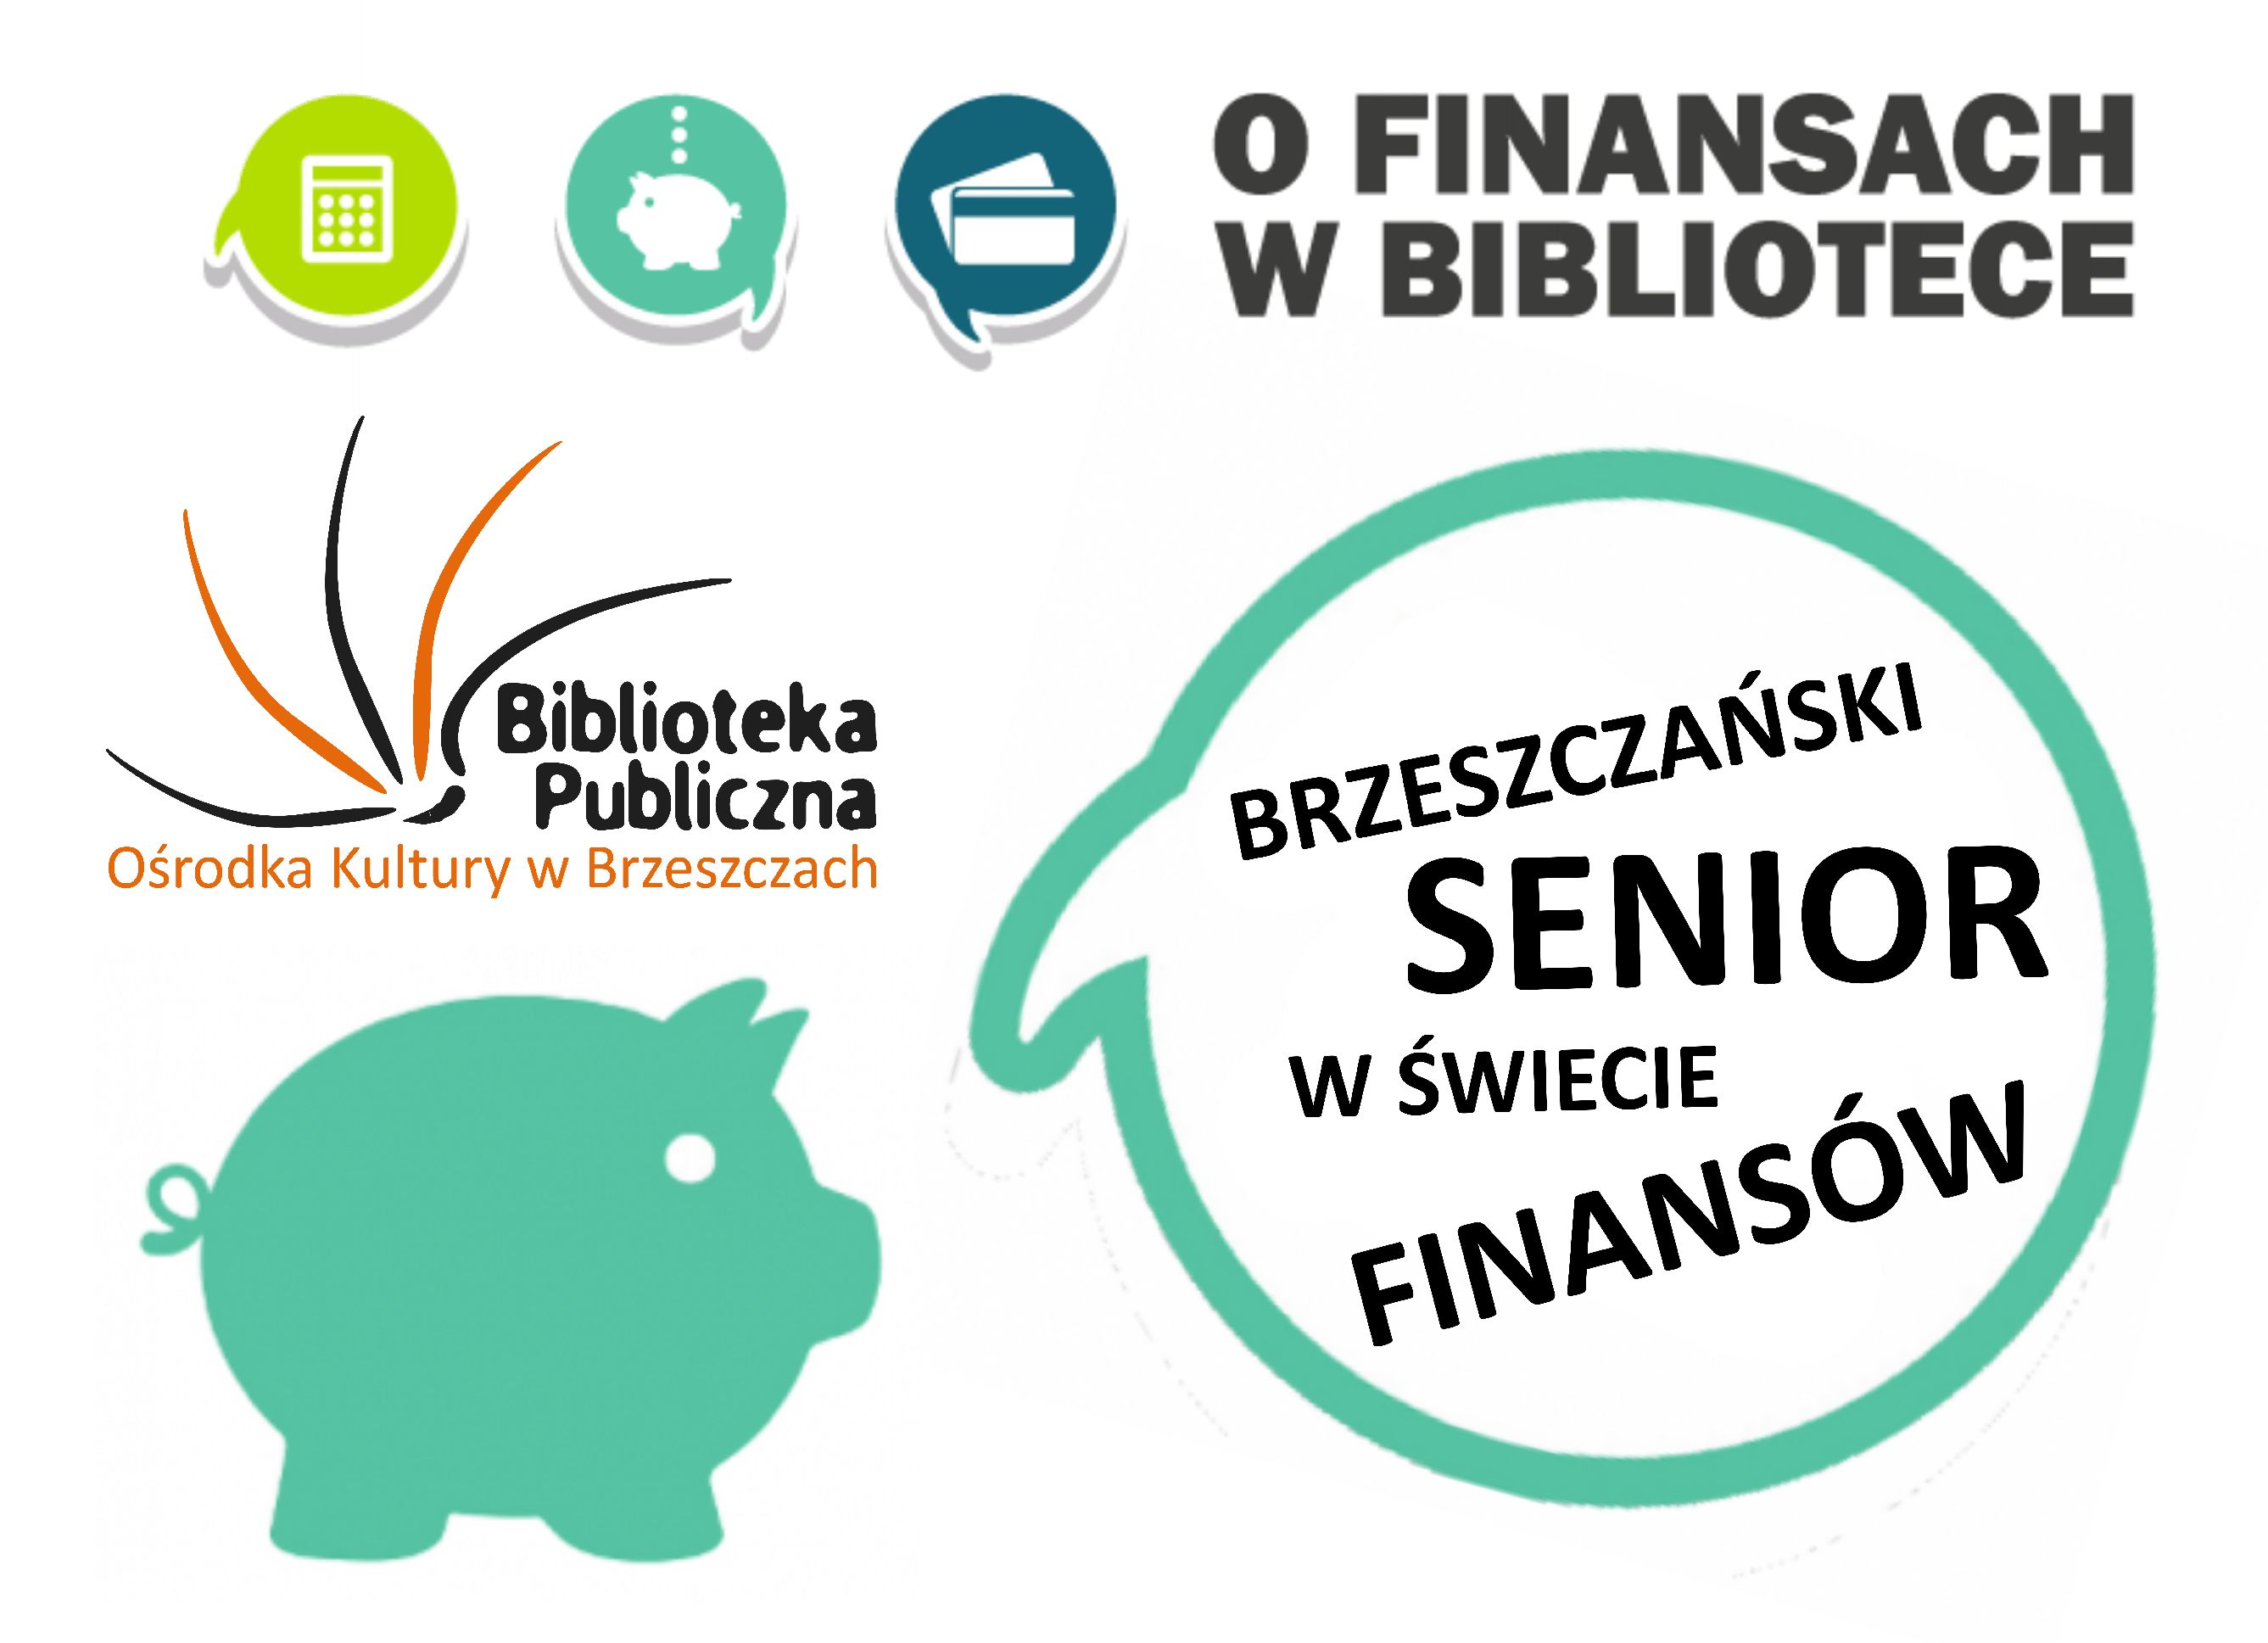 Brzeszczański senior w świecie finansów 